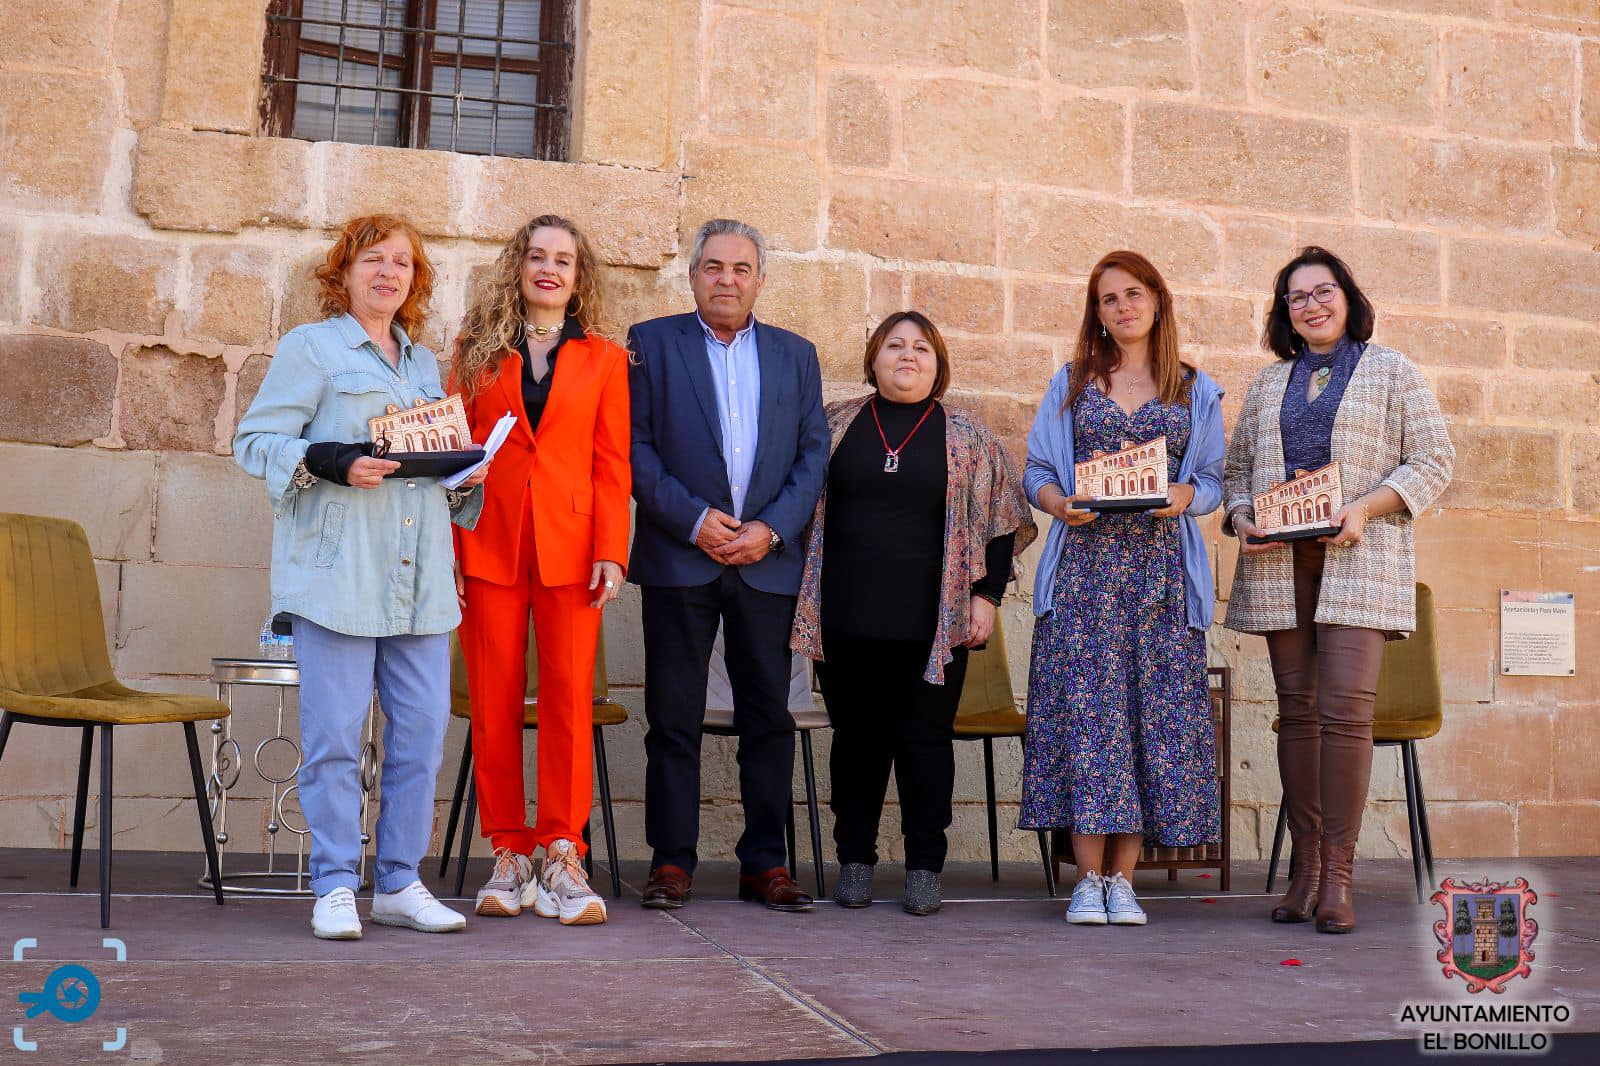 El Bonillo entrega los Premios de su XIII edición del Certamen Internacional de poesía

